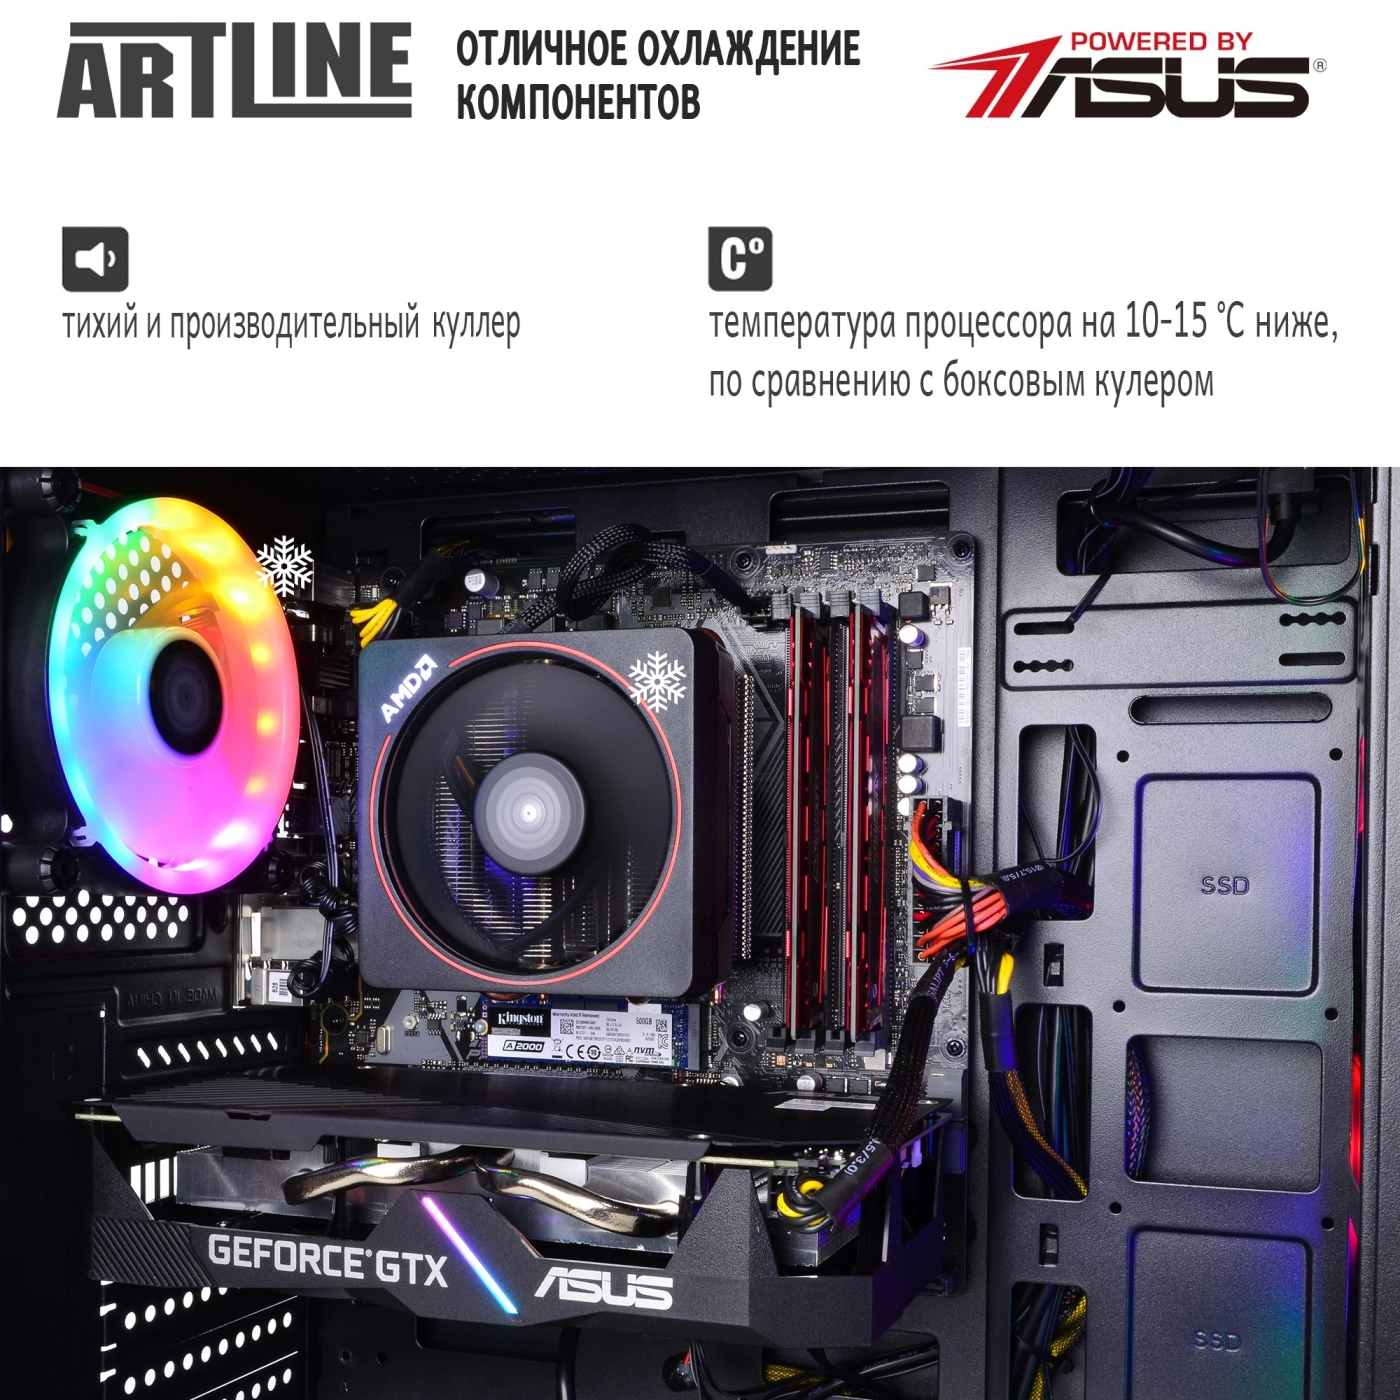 Купить Компьютер ARTLINE Gaming X46v31 - фото 7